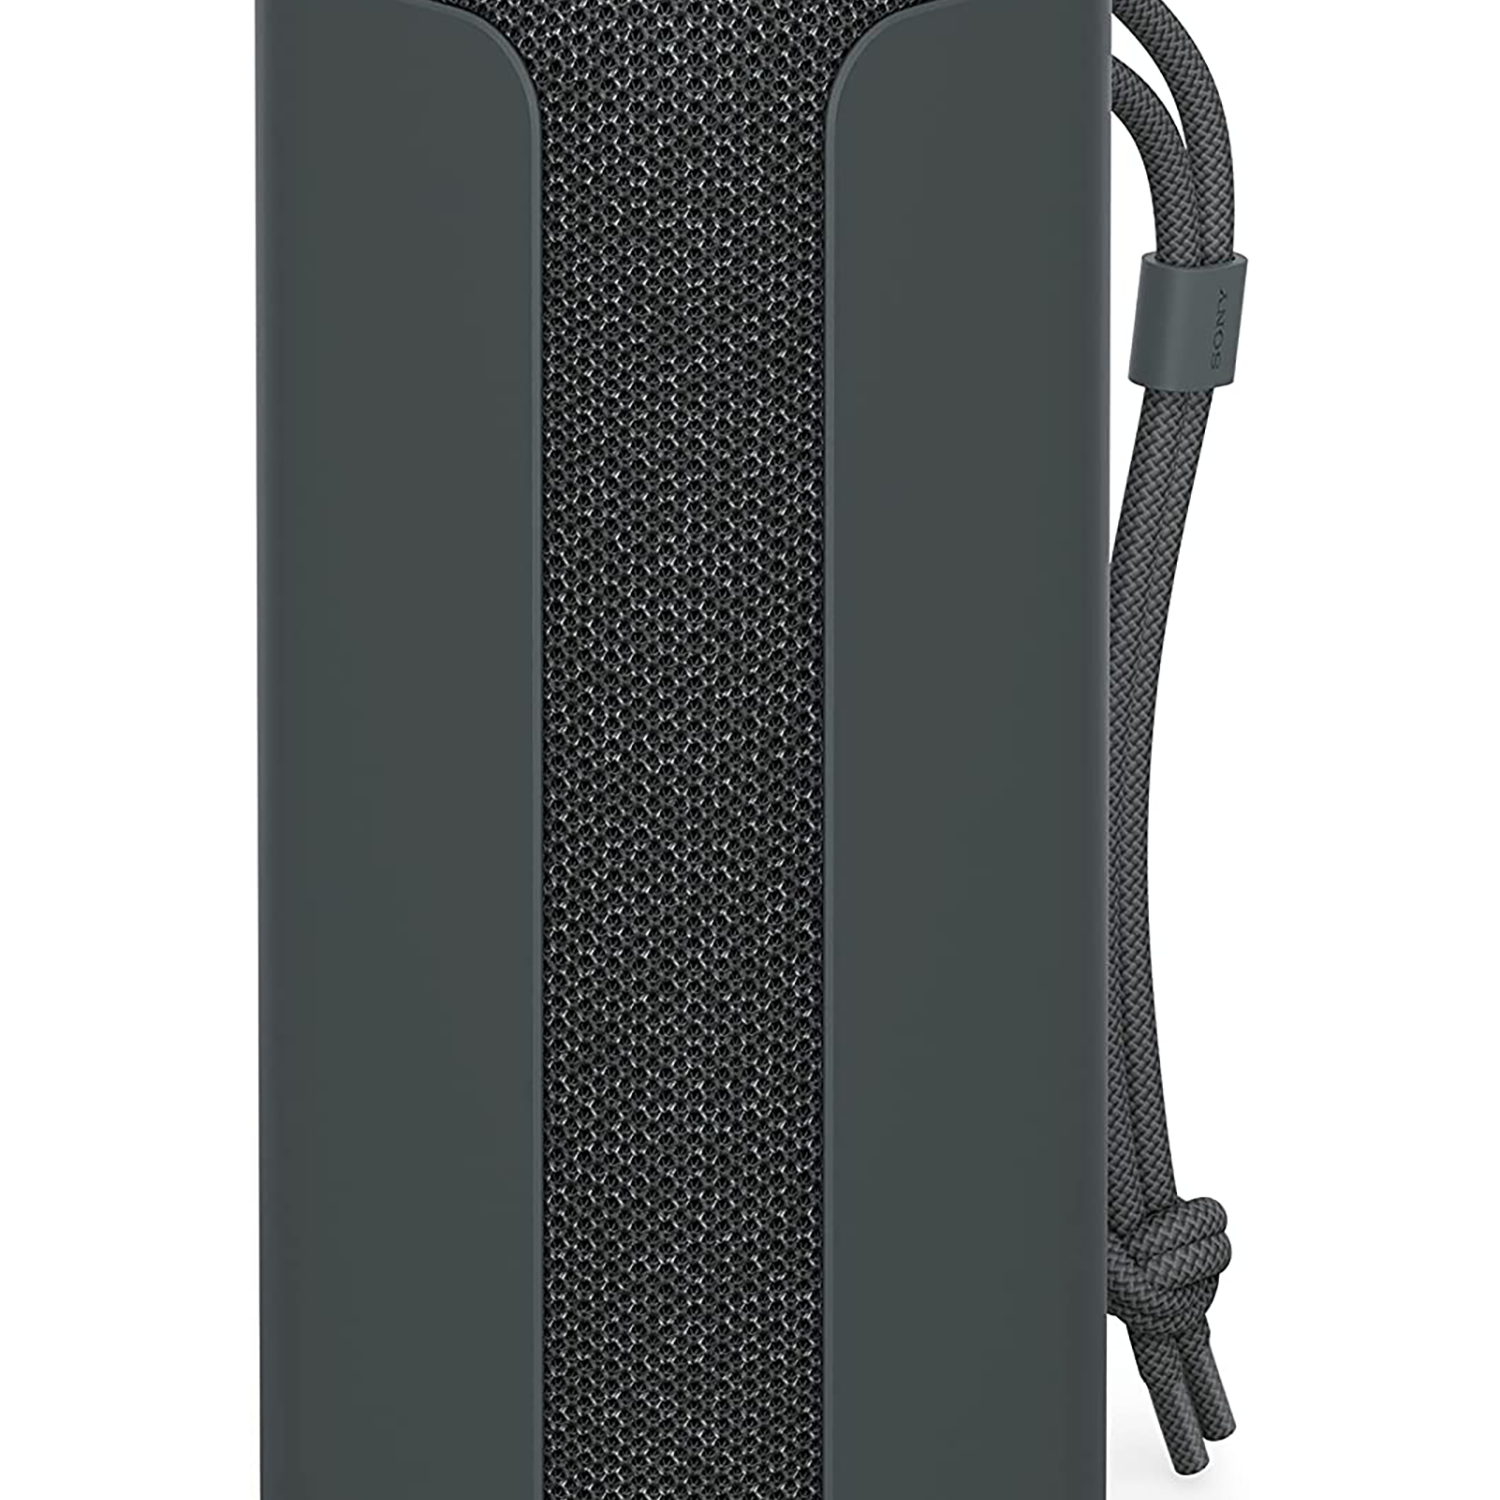 Sony SRS-XE200  Waterproof Wireless Ultra light Bluetooth Speaker